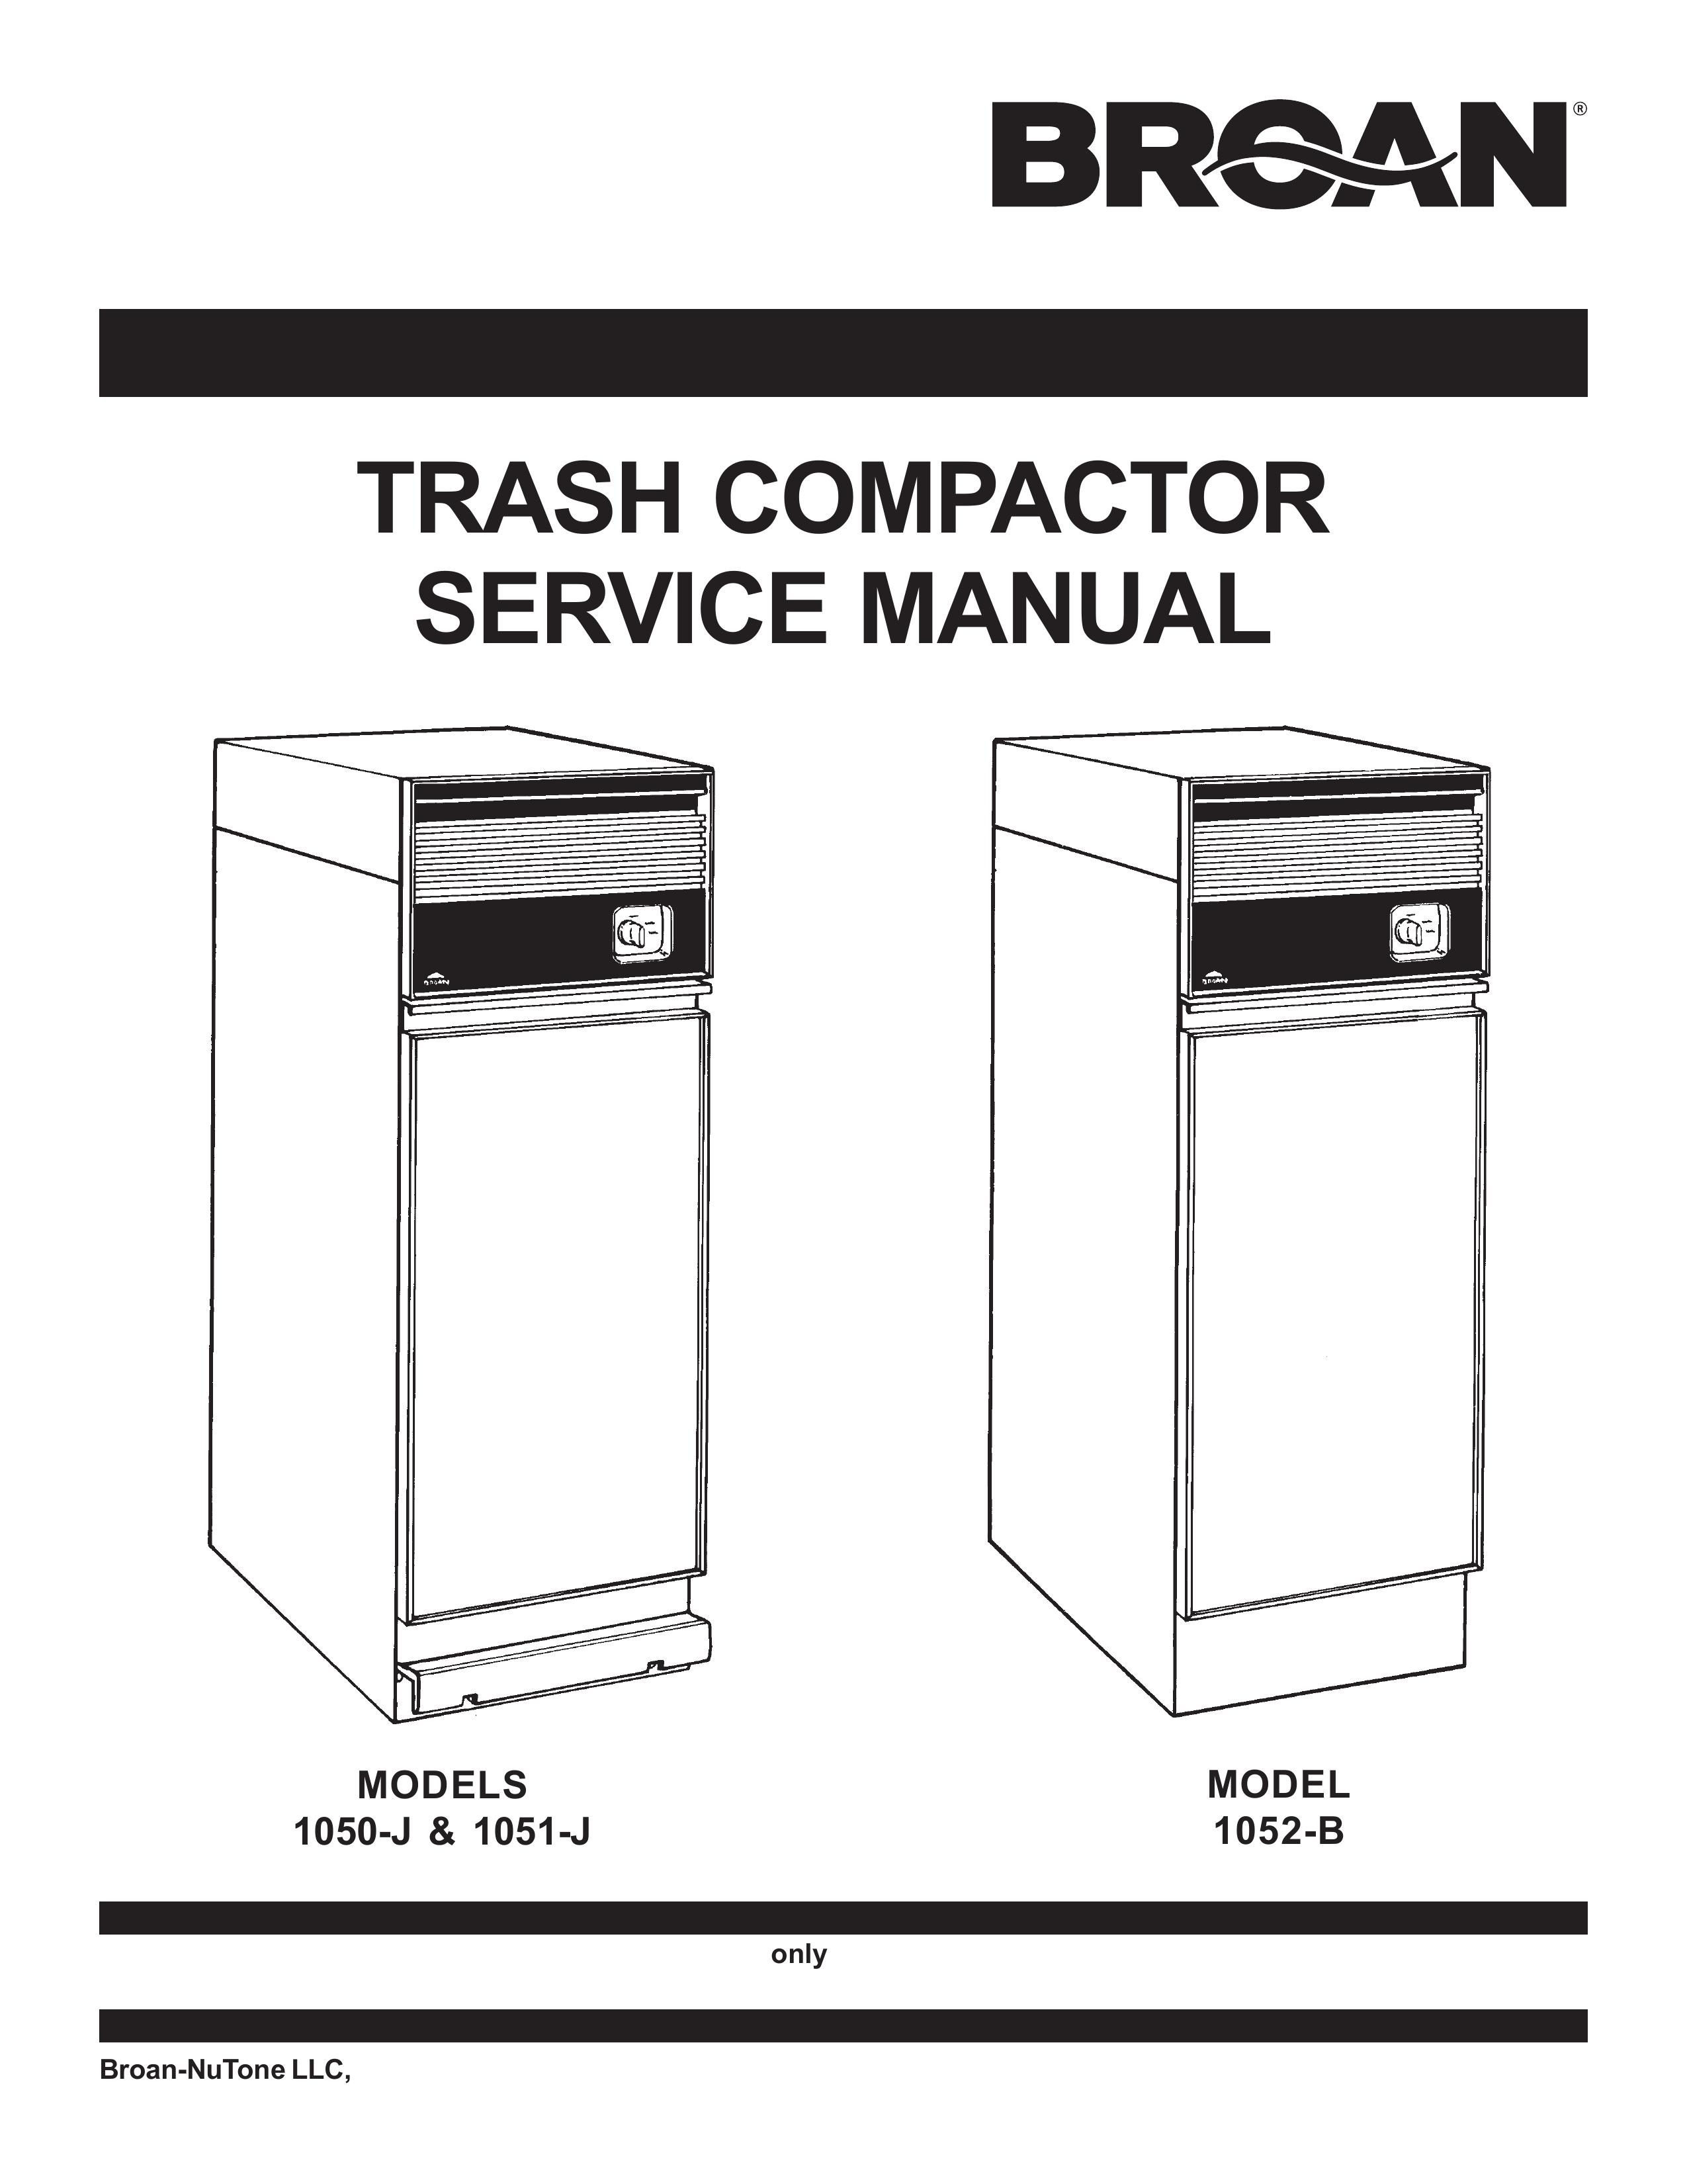 Broan 1050-J Trash Compactor User Manual